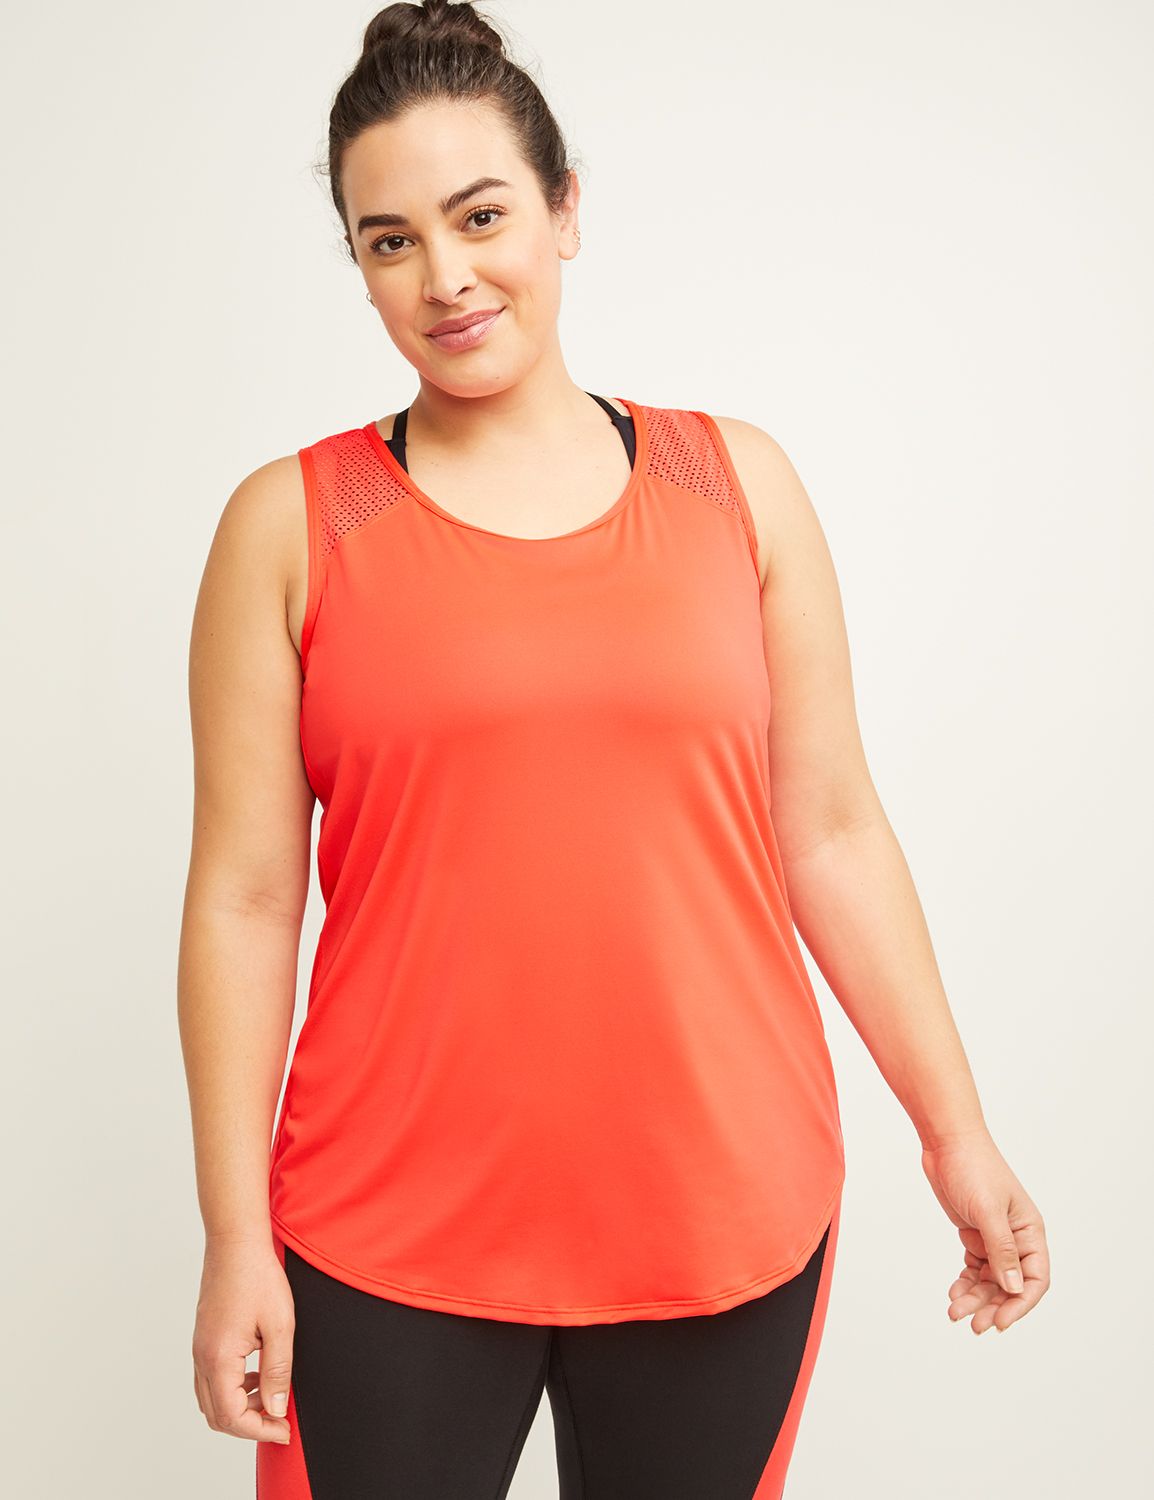 Plus Size Livi Active Workout Clothes & Activewear | Lane Bryant